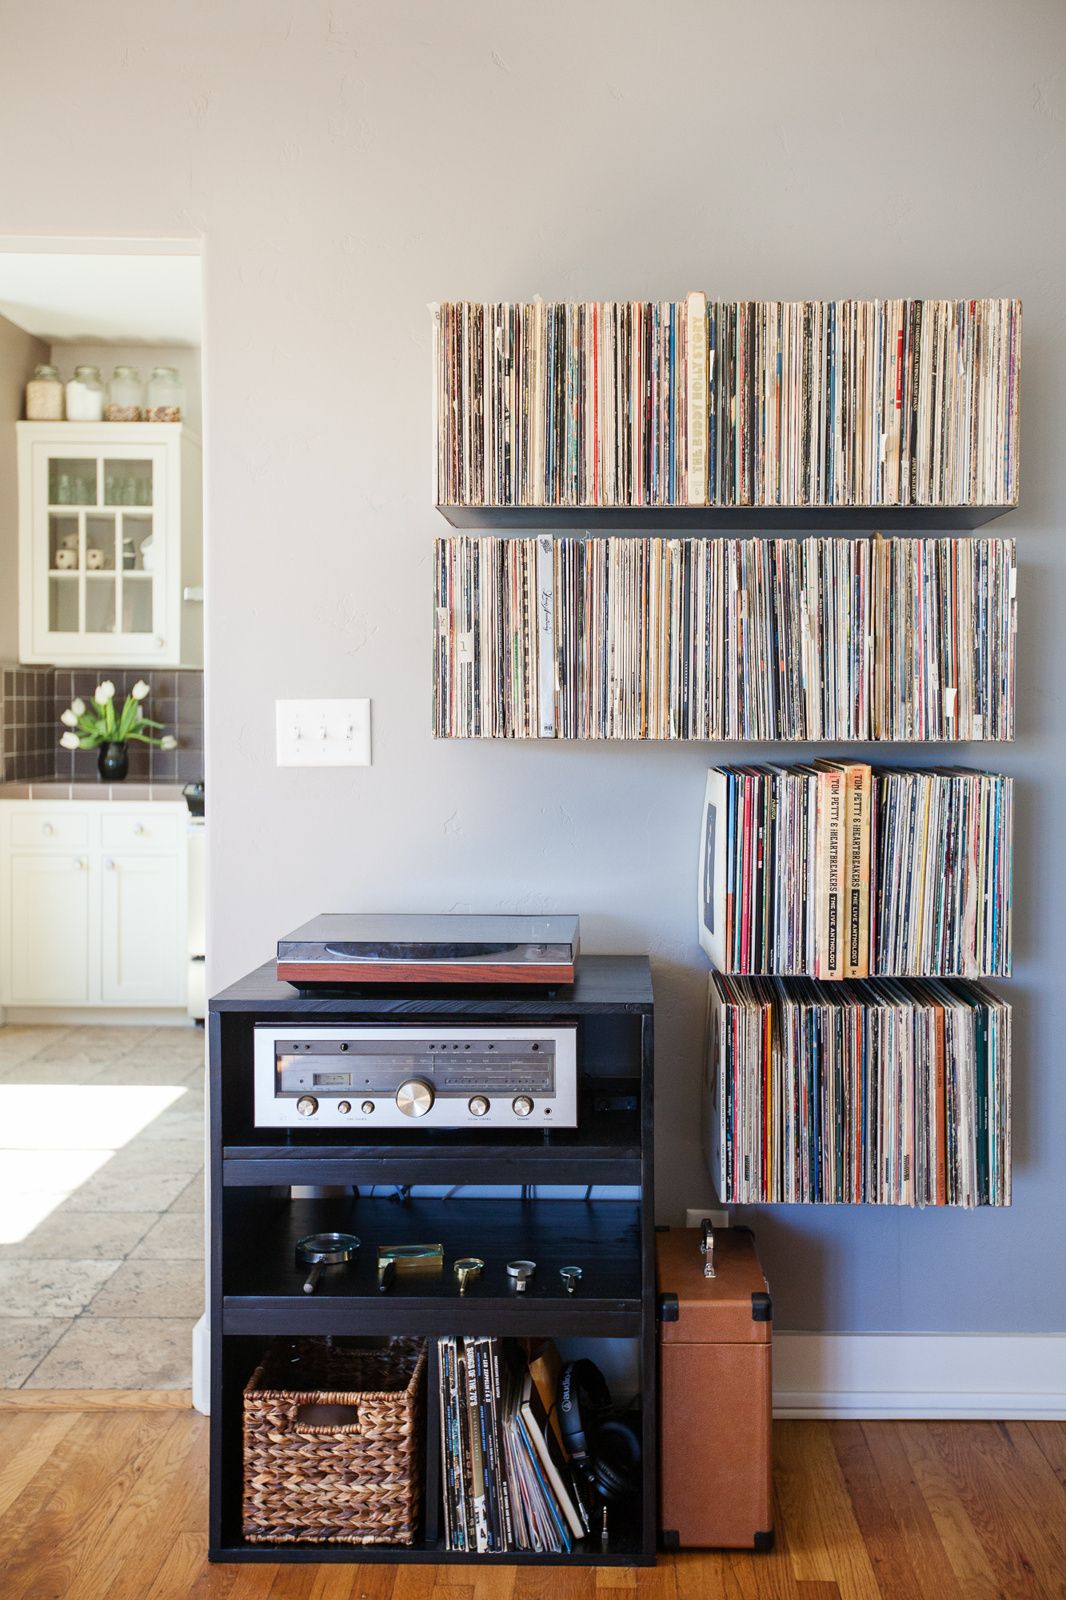 Ideas para decorar tu casa con discos y vinilos